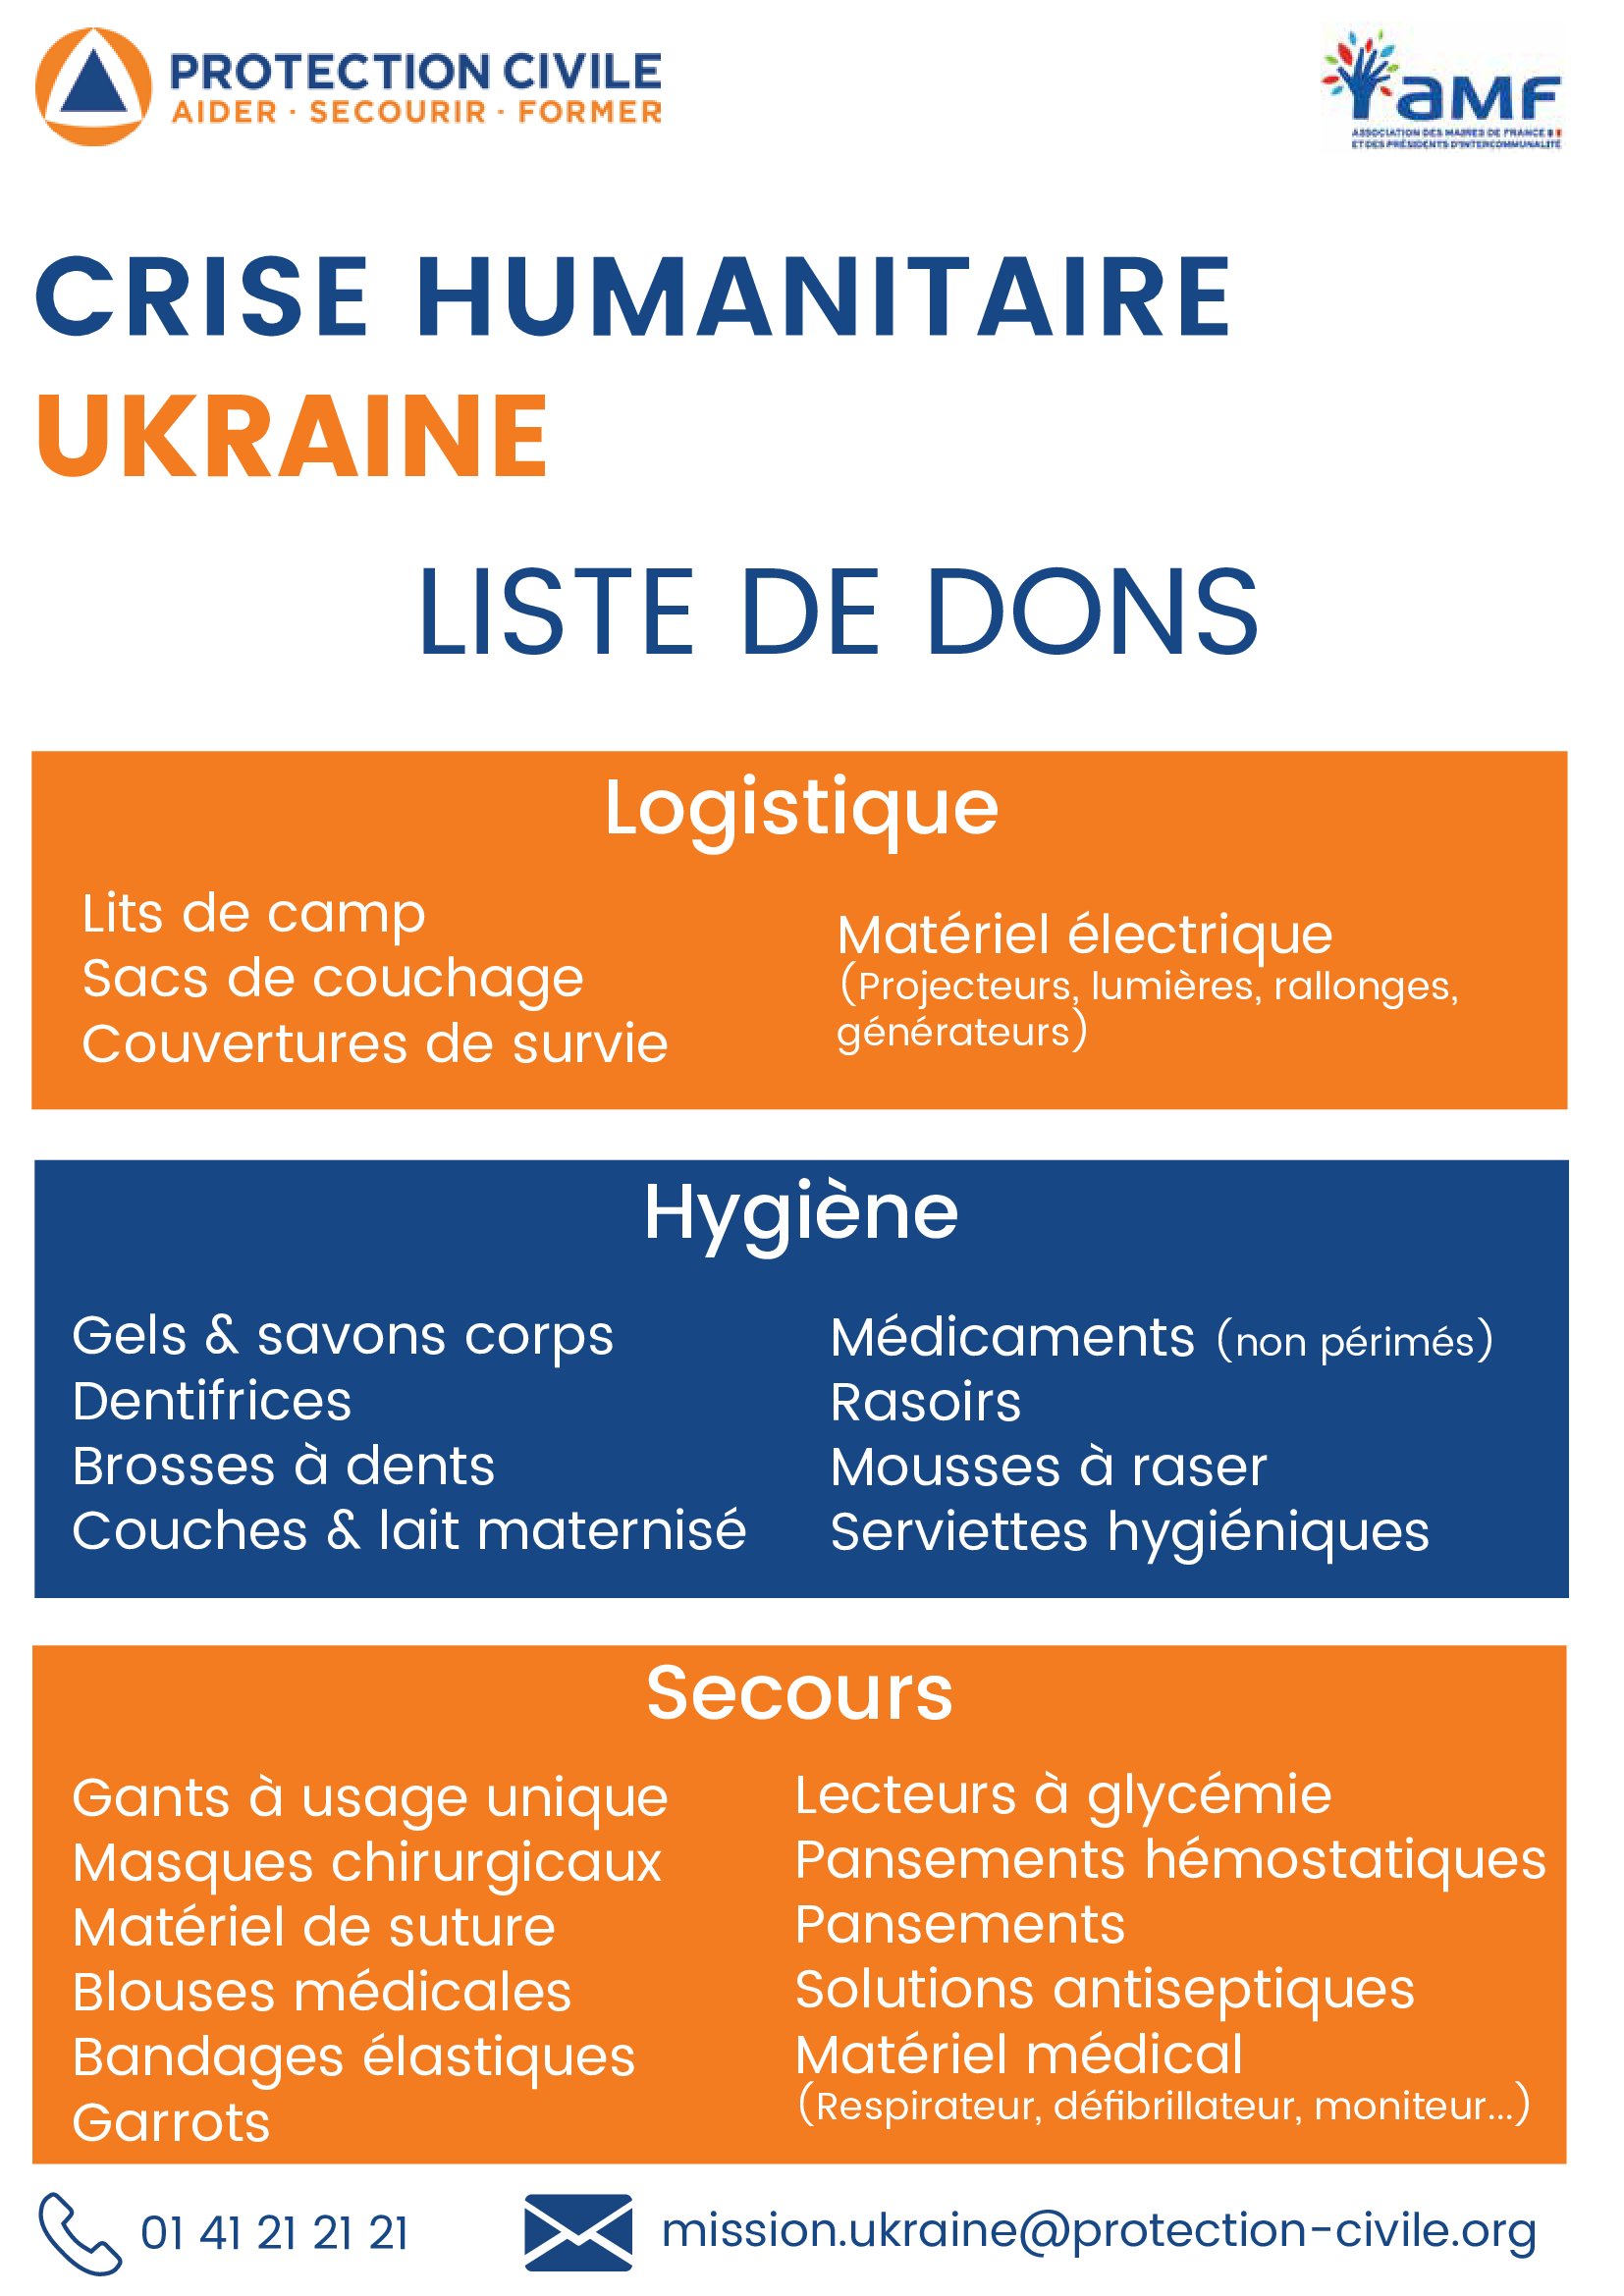 Liste de dons materiels Mission Ukraine 1 of 1